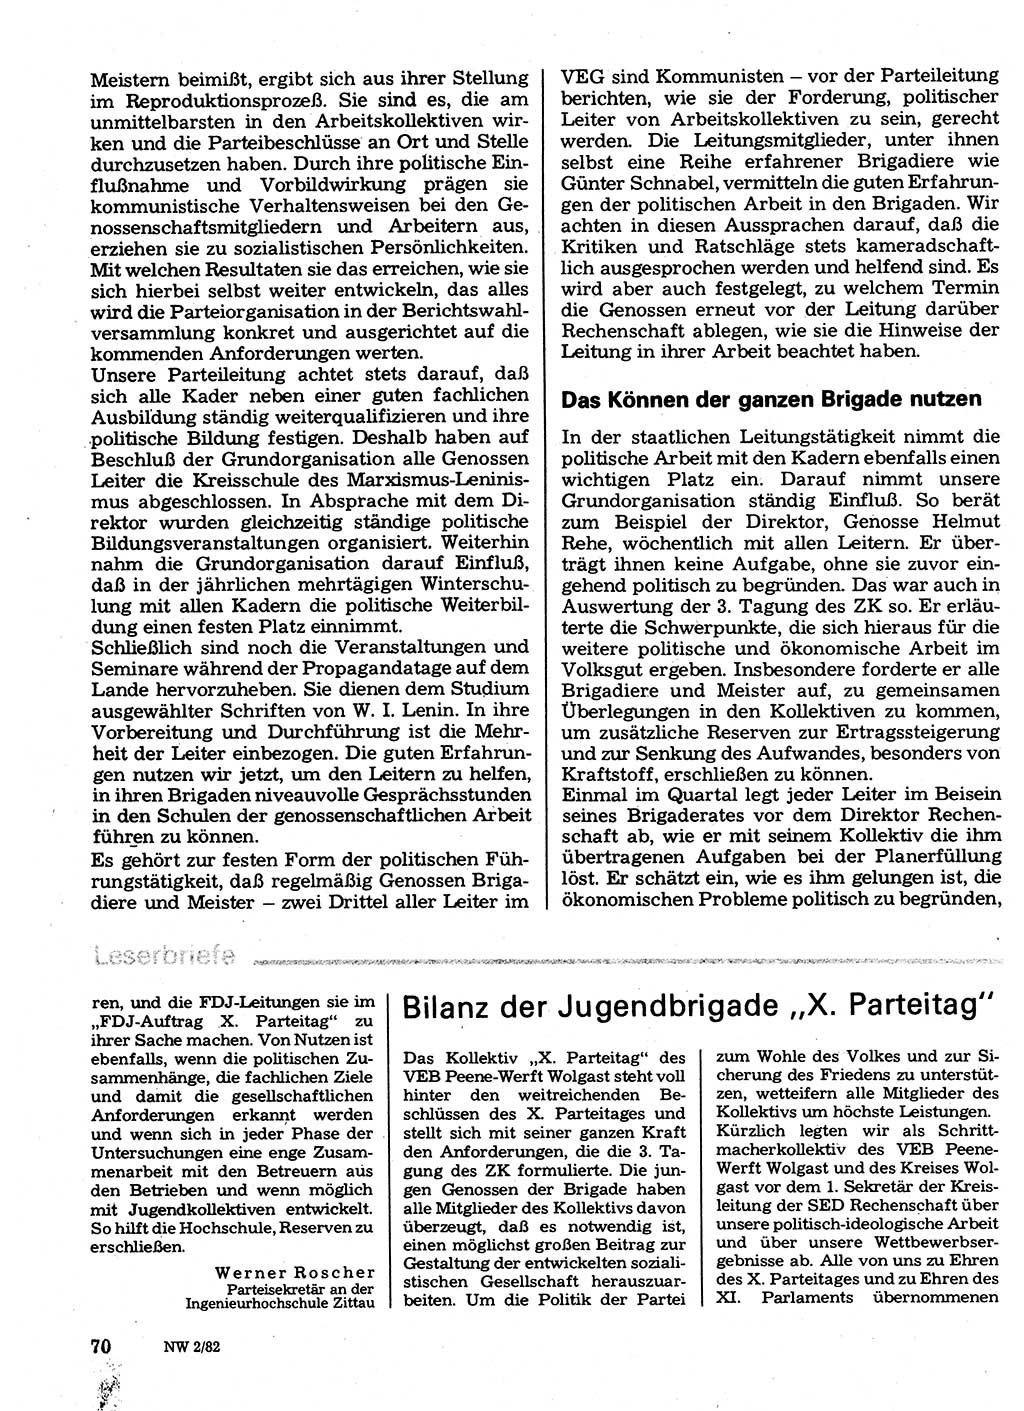 Neuer Weg (NW), Organ des Zentralkomitees (ZK) der SED (Sozialistische Einheitspartei Deutschlands) für Fragen des Parteilebens, 37. Jahrgang [Deutsche Demokratische Republik (DDR)] 1982, Seite 70 (NW ZK SED DDR 1982, S. 70)